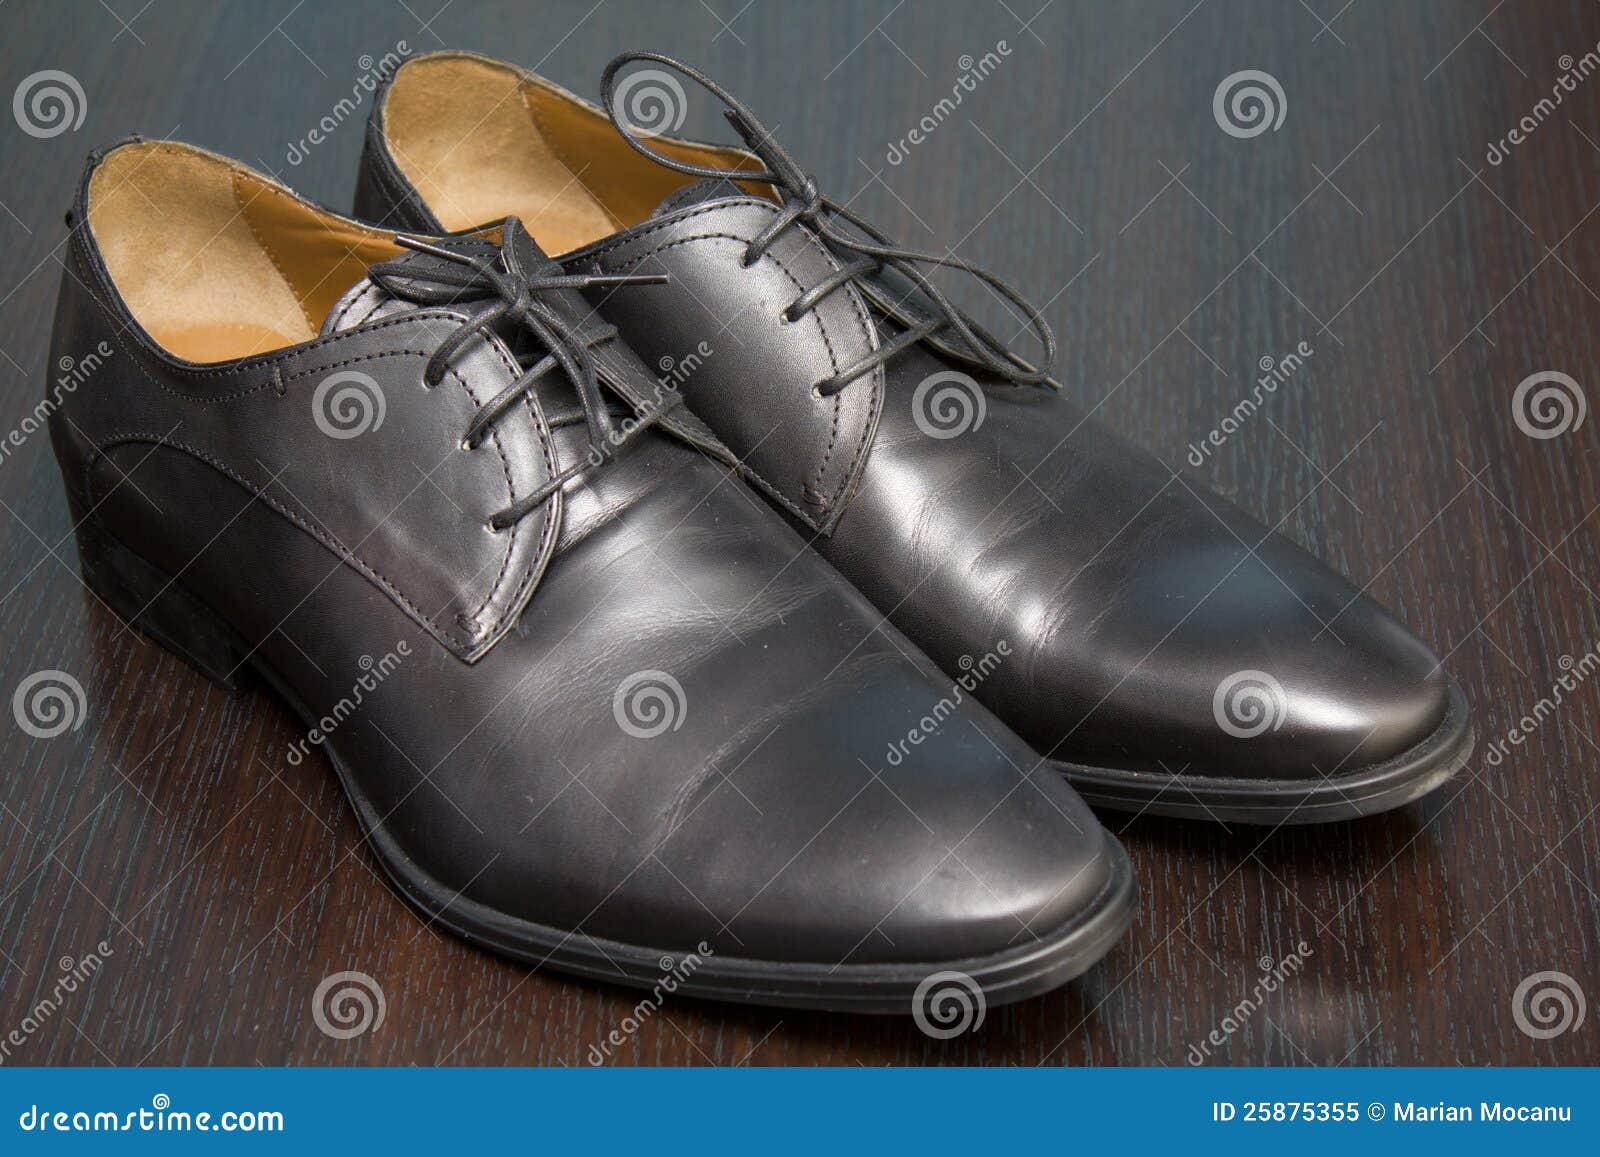 Leather shoes stock image. Image of fashion, lifestyle - 25875355